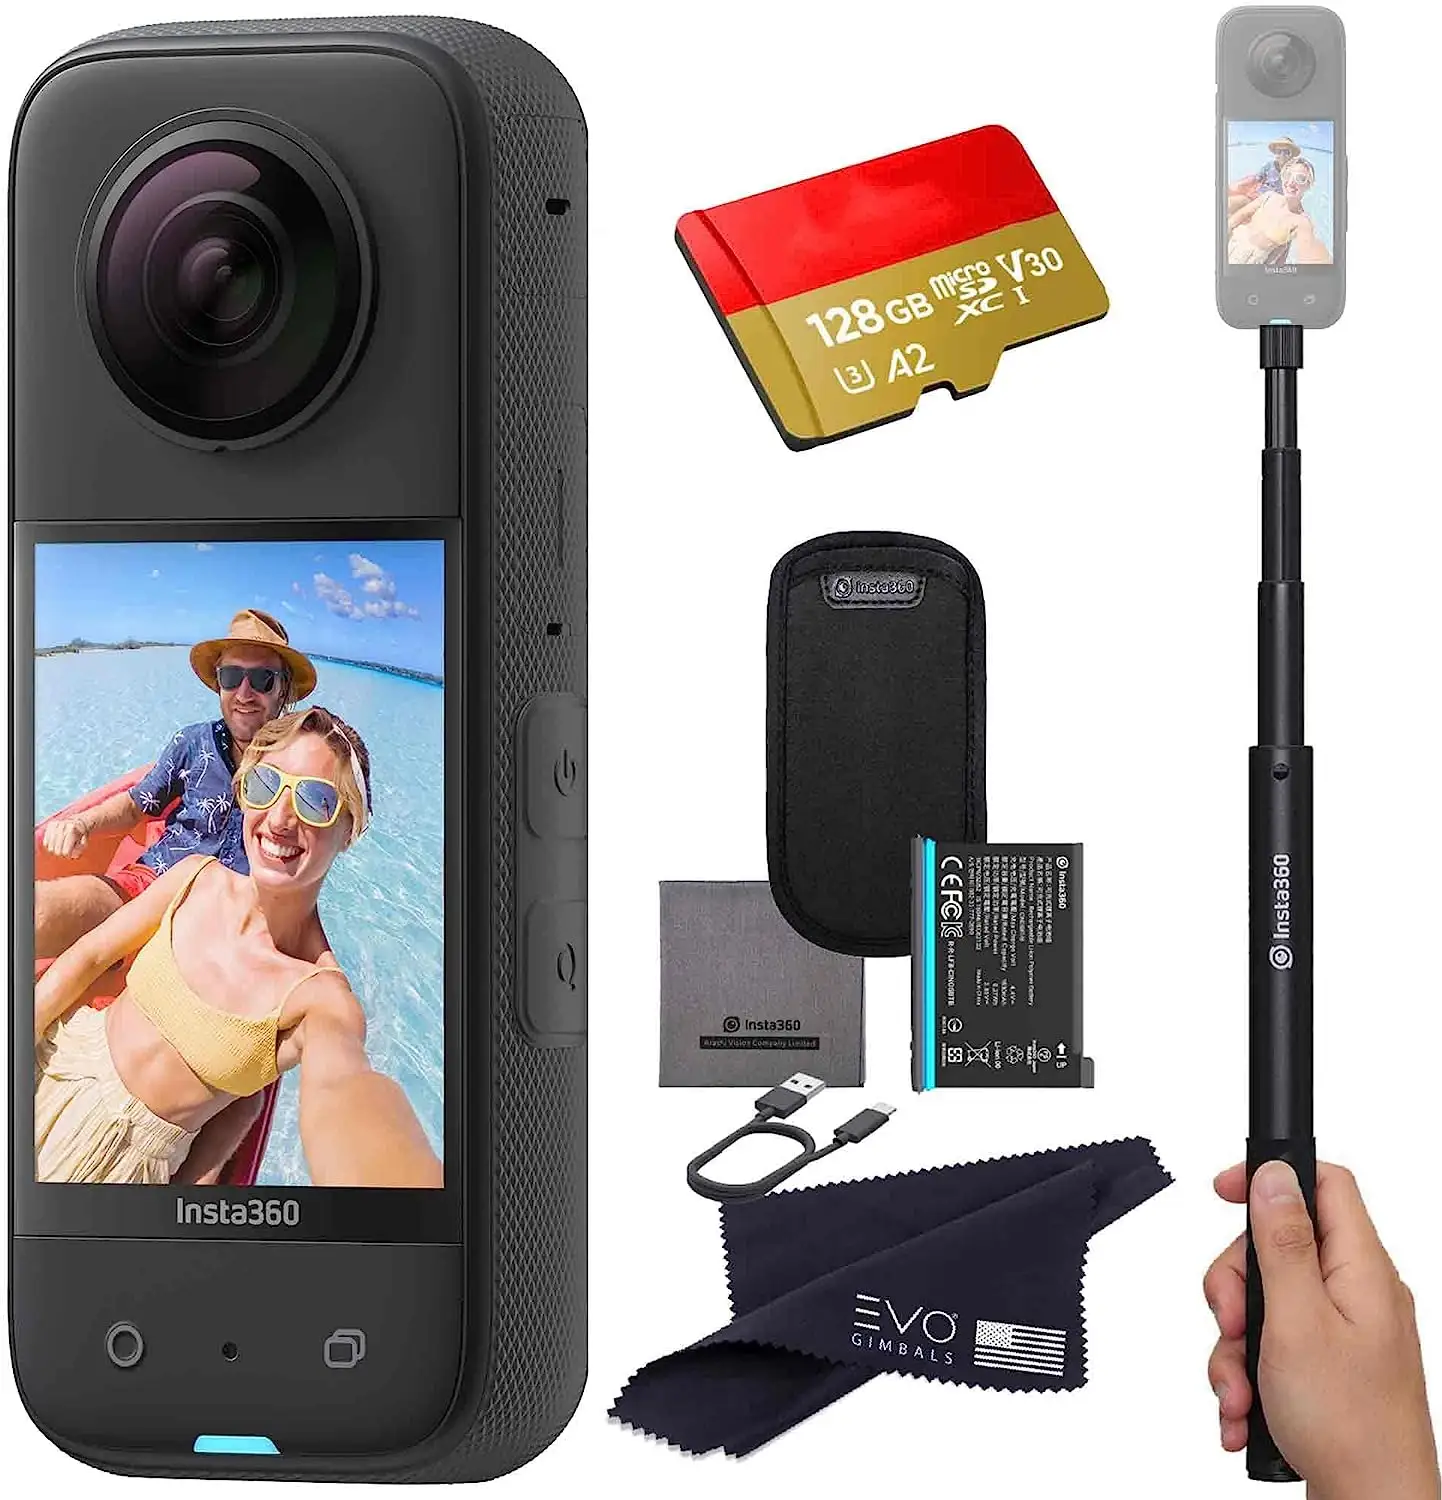 360กันน้ำใหม่กล้องแอ็กชันติด X3 Insta 360พร้อมเซ็นเซอร์48MP 5.7K HDR วิดีโอ selfie จาก USA exporter